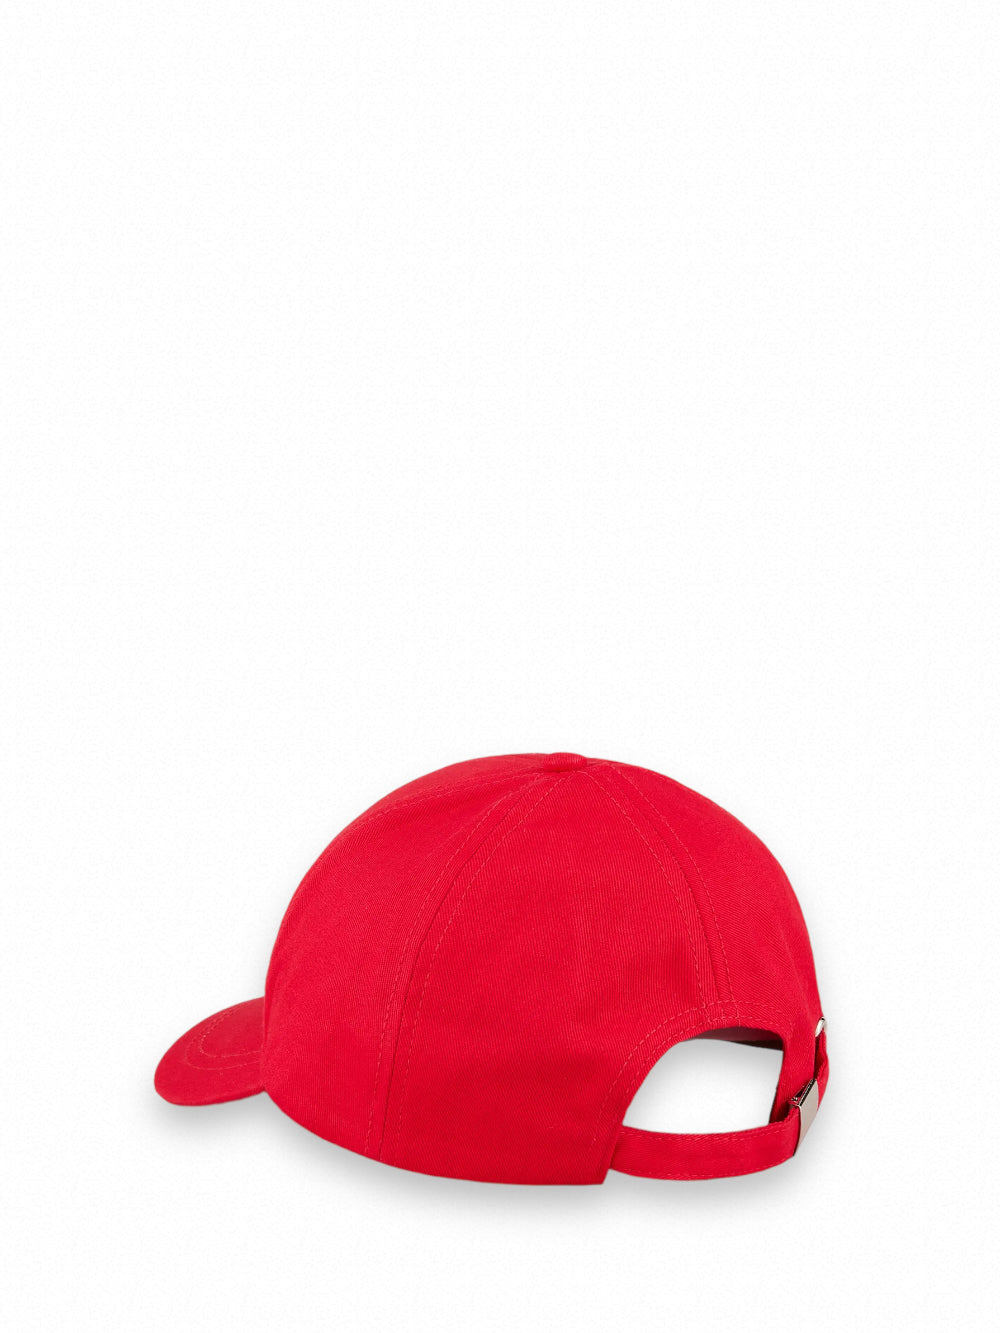 Ea7 Emporio Armani Baseball Hat 247088 Red/white